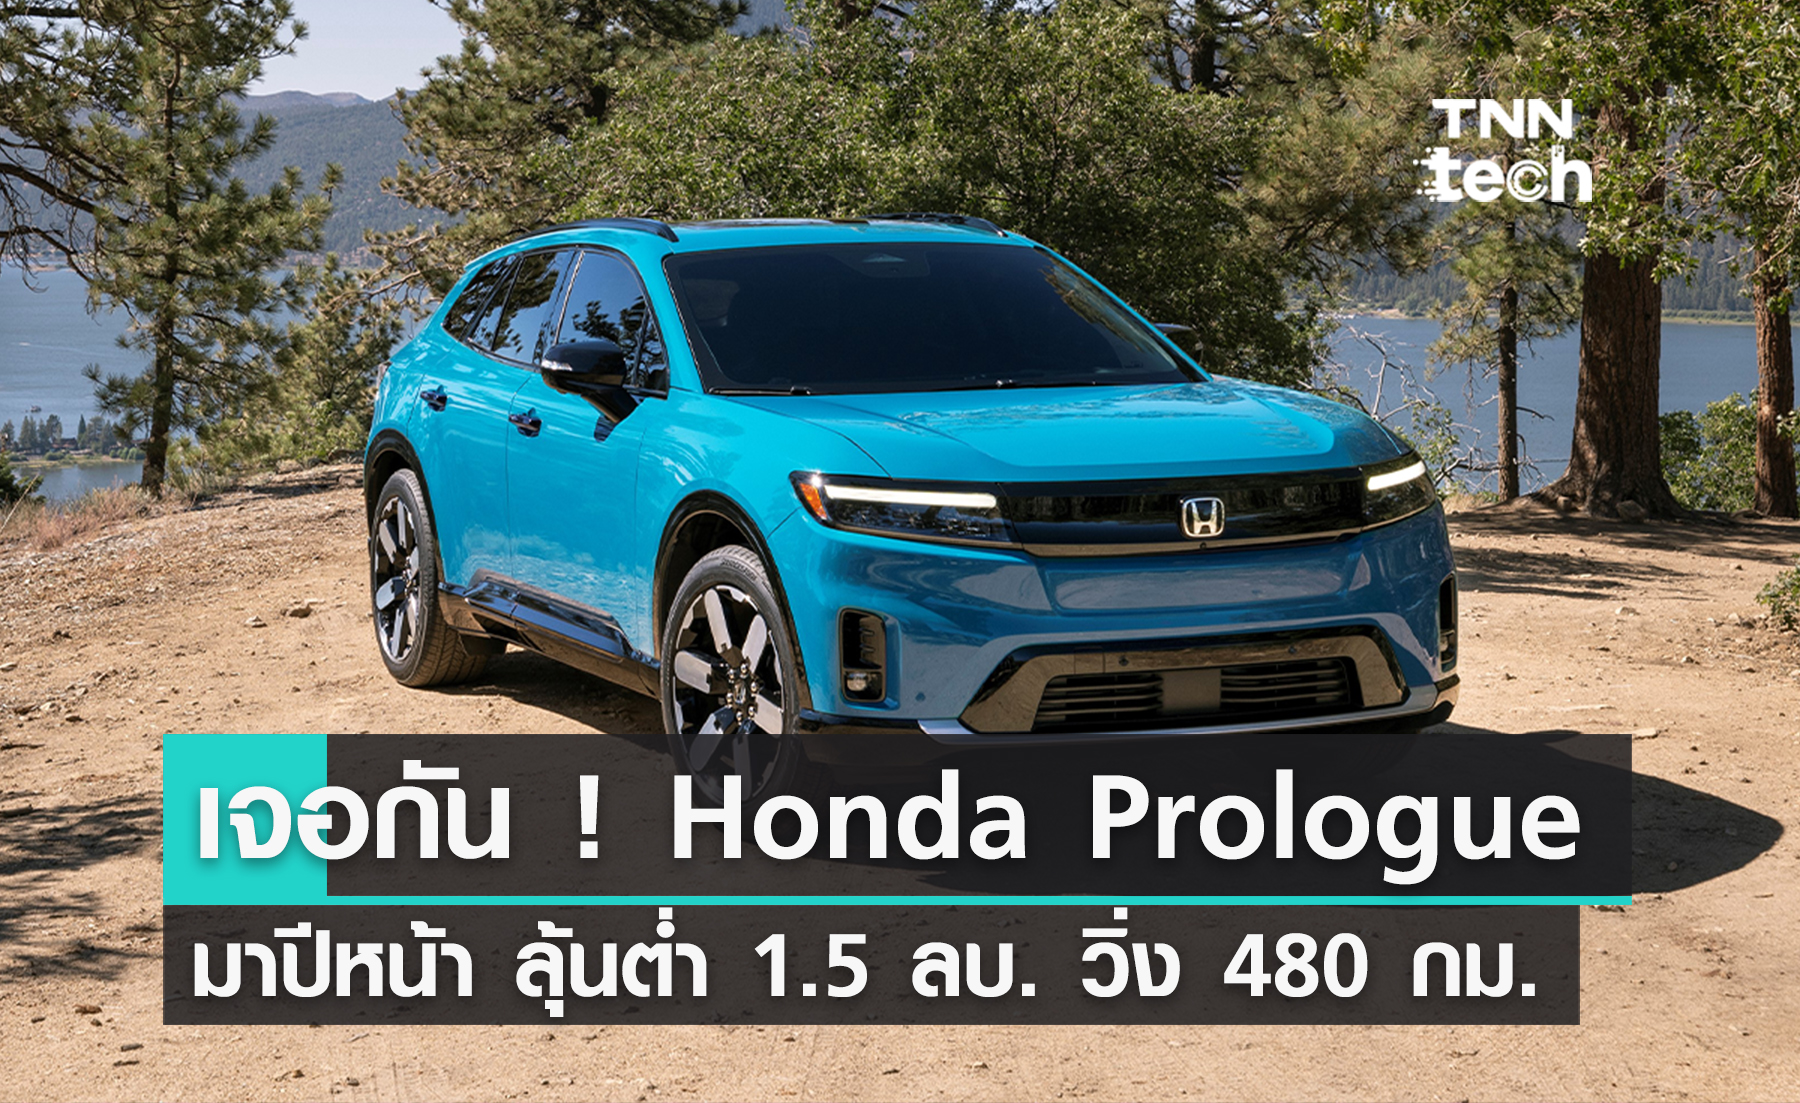 ฮอนด้า เผยรายละเอียด 'Honda Prologue' รถ SUV ไฟฟ้าคันแรกของฮอนด้า ปีหน้ามาแน่  ลุ้นราคาต่ำ 1.5 ล้านบาท